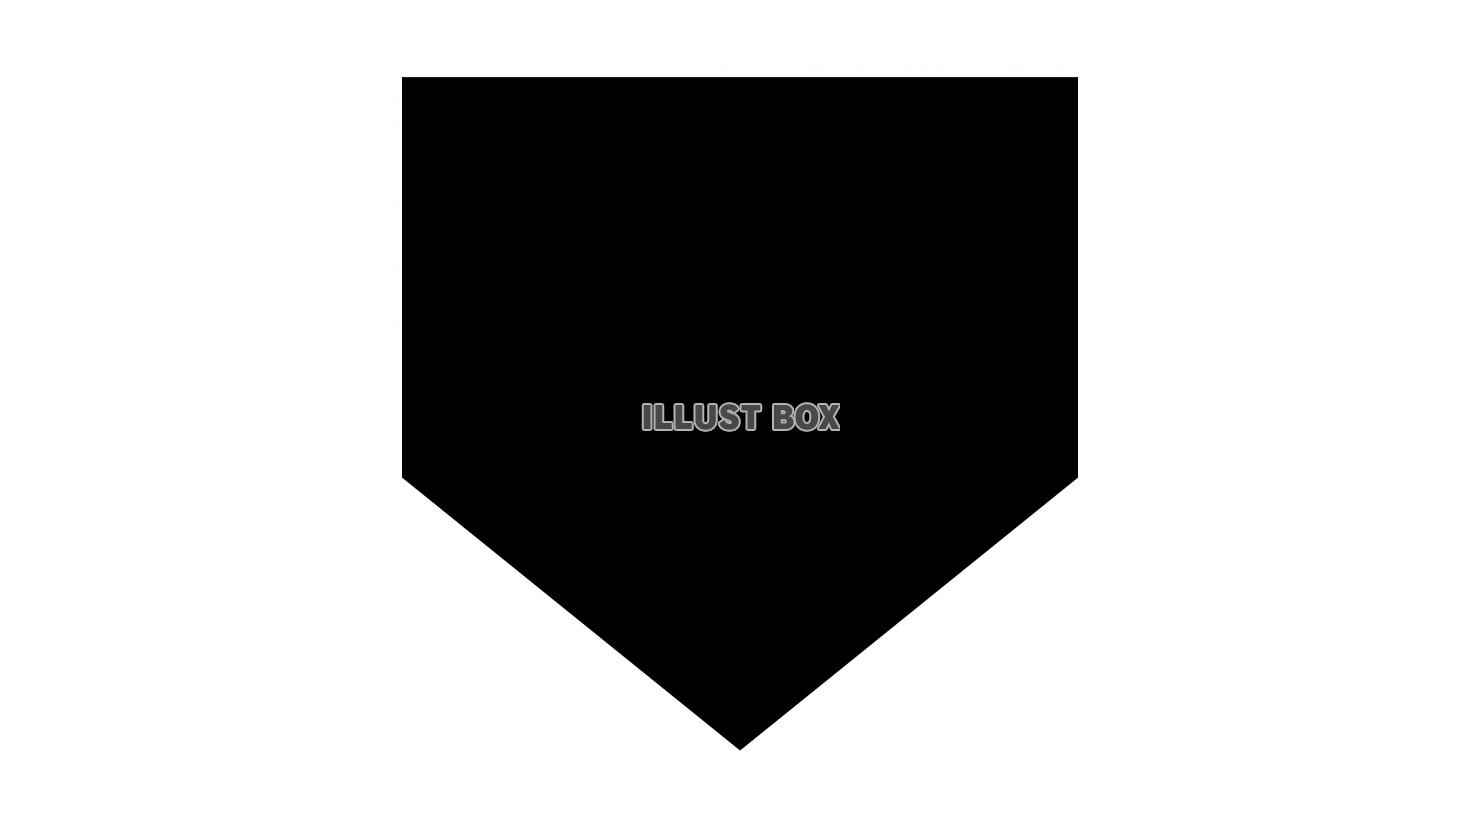  五角形の黒い野球のホームベース